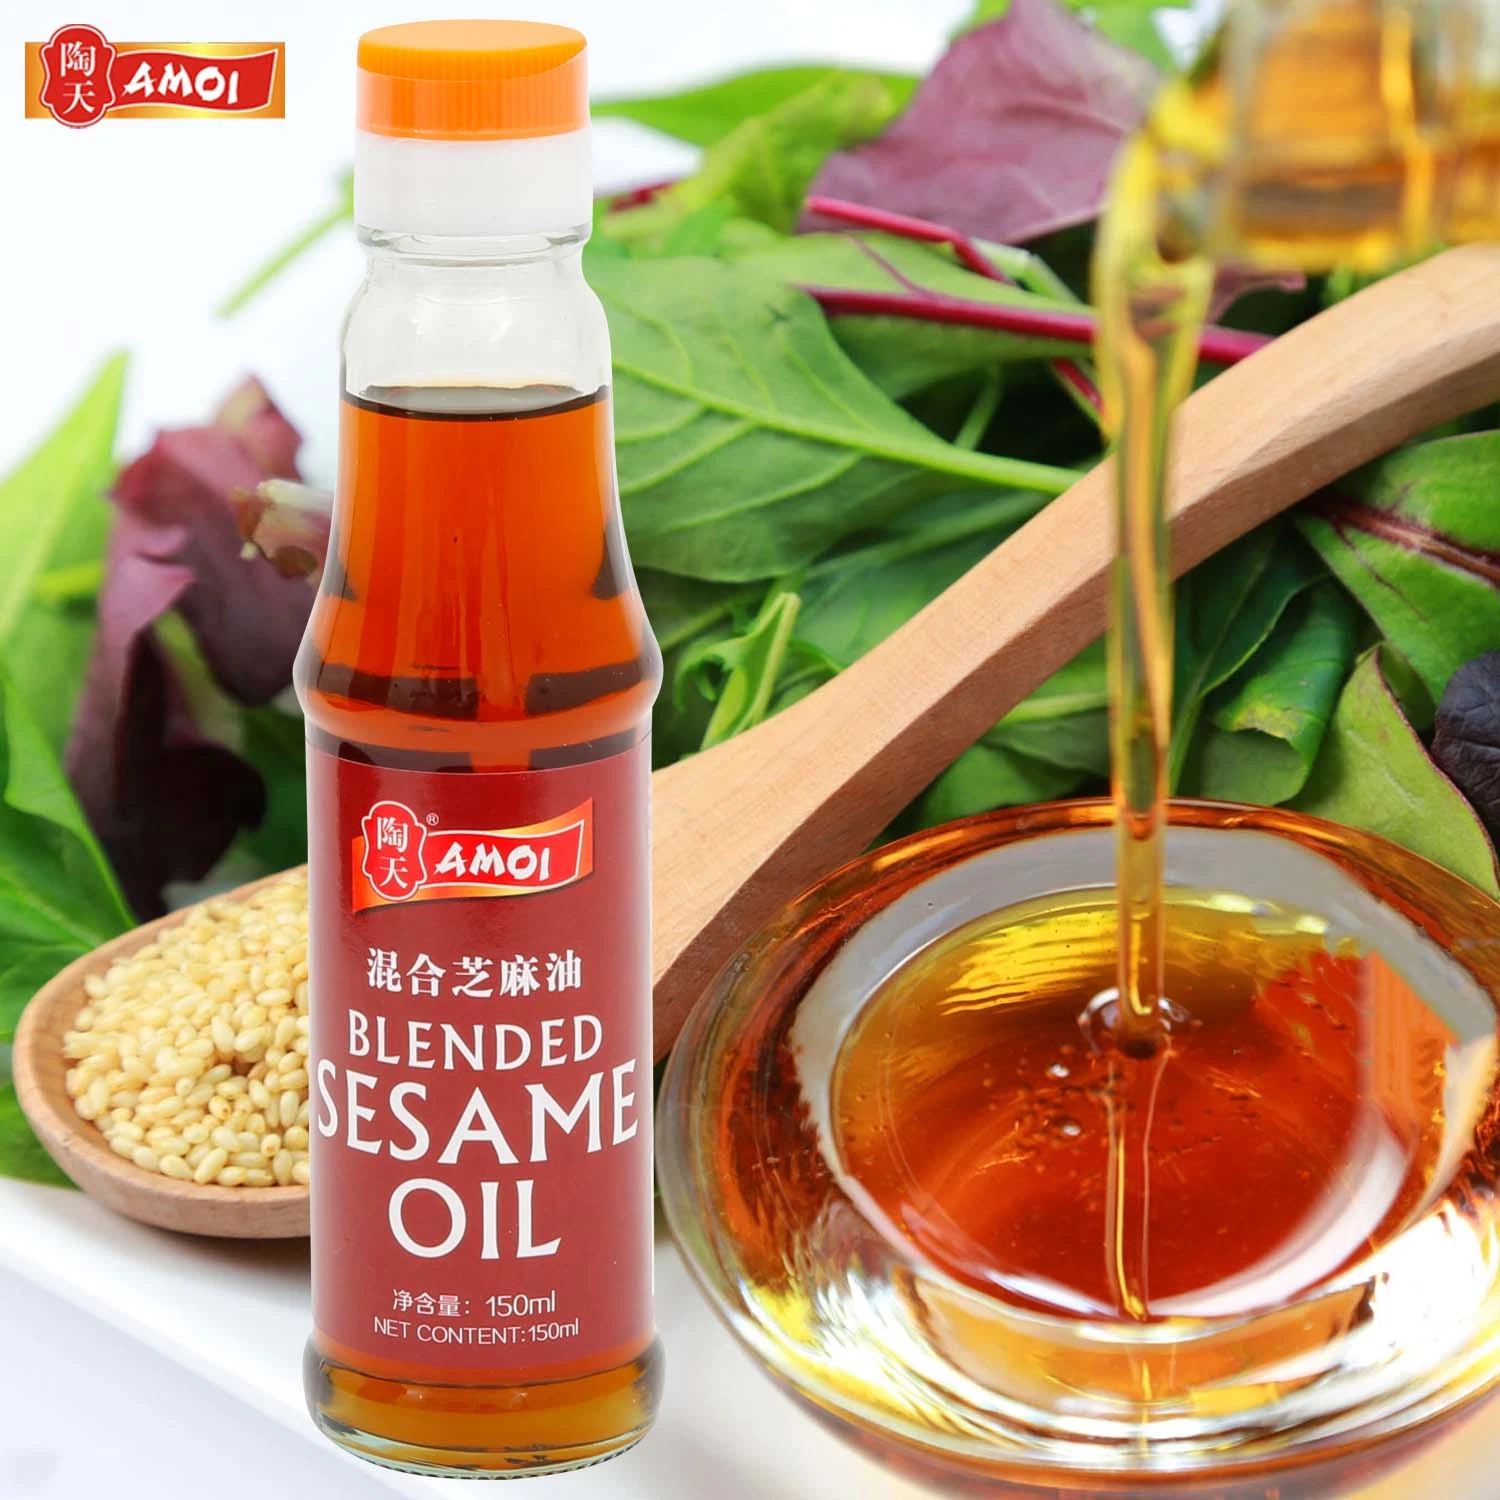 Aceite de cocina Amoi vs aceite de sésamo de Bachun Blended